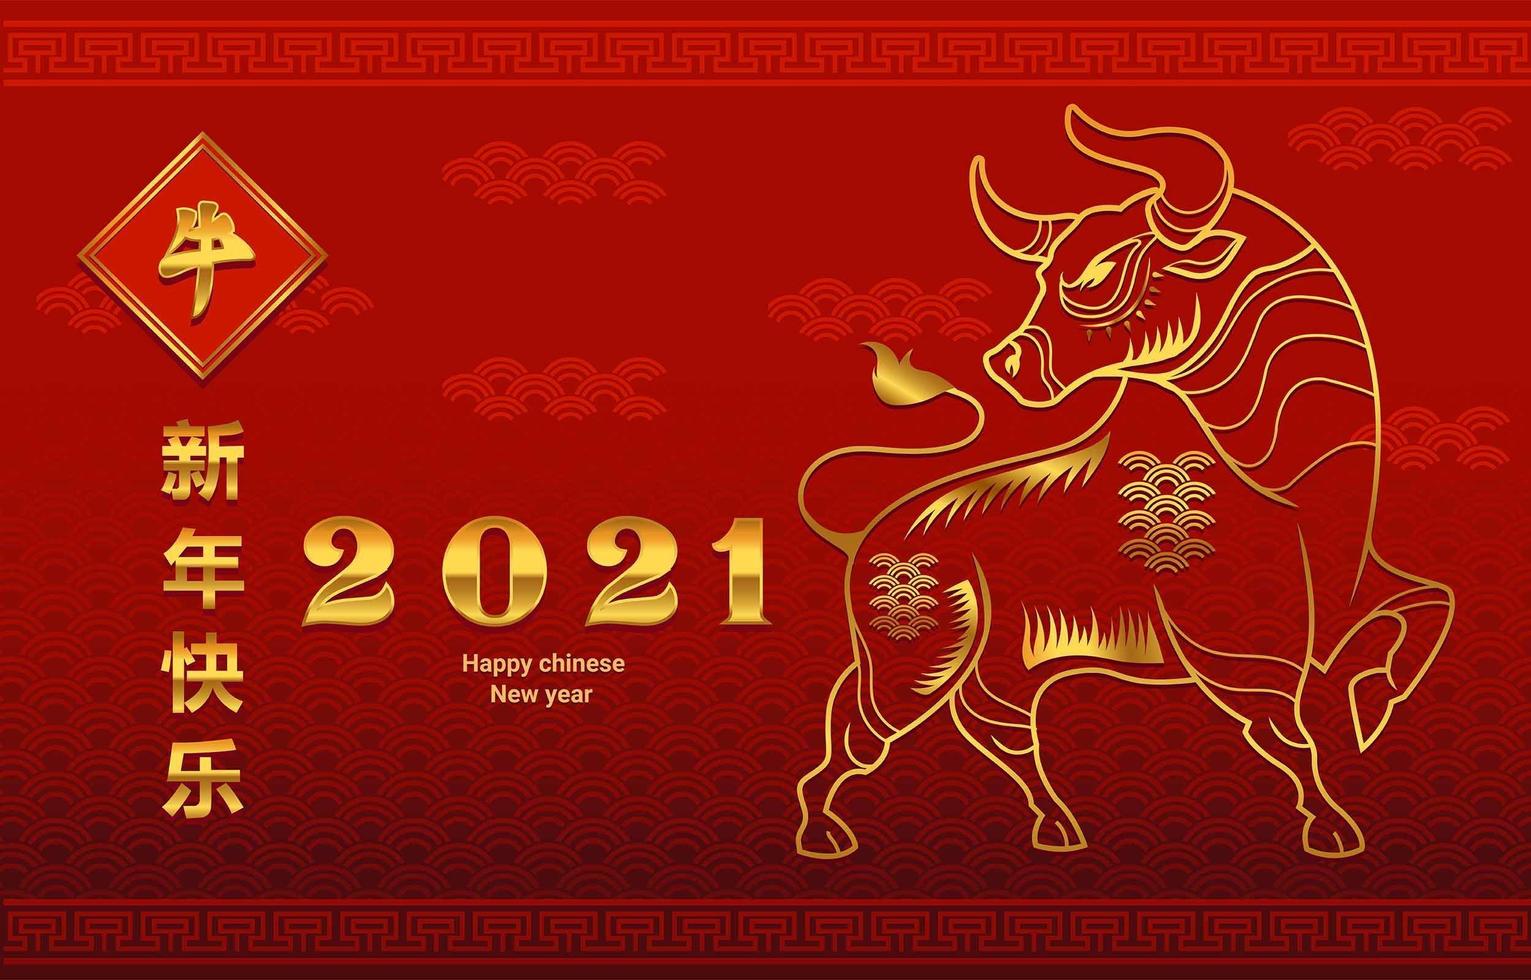 célébrant le nouvel an chinois vecteur